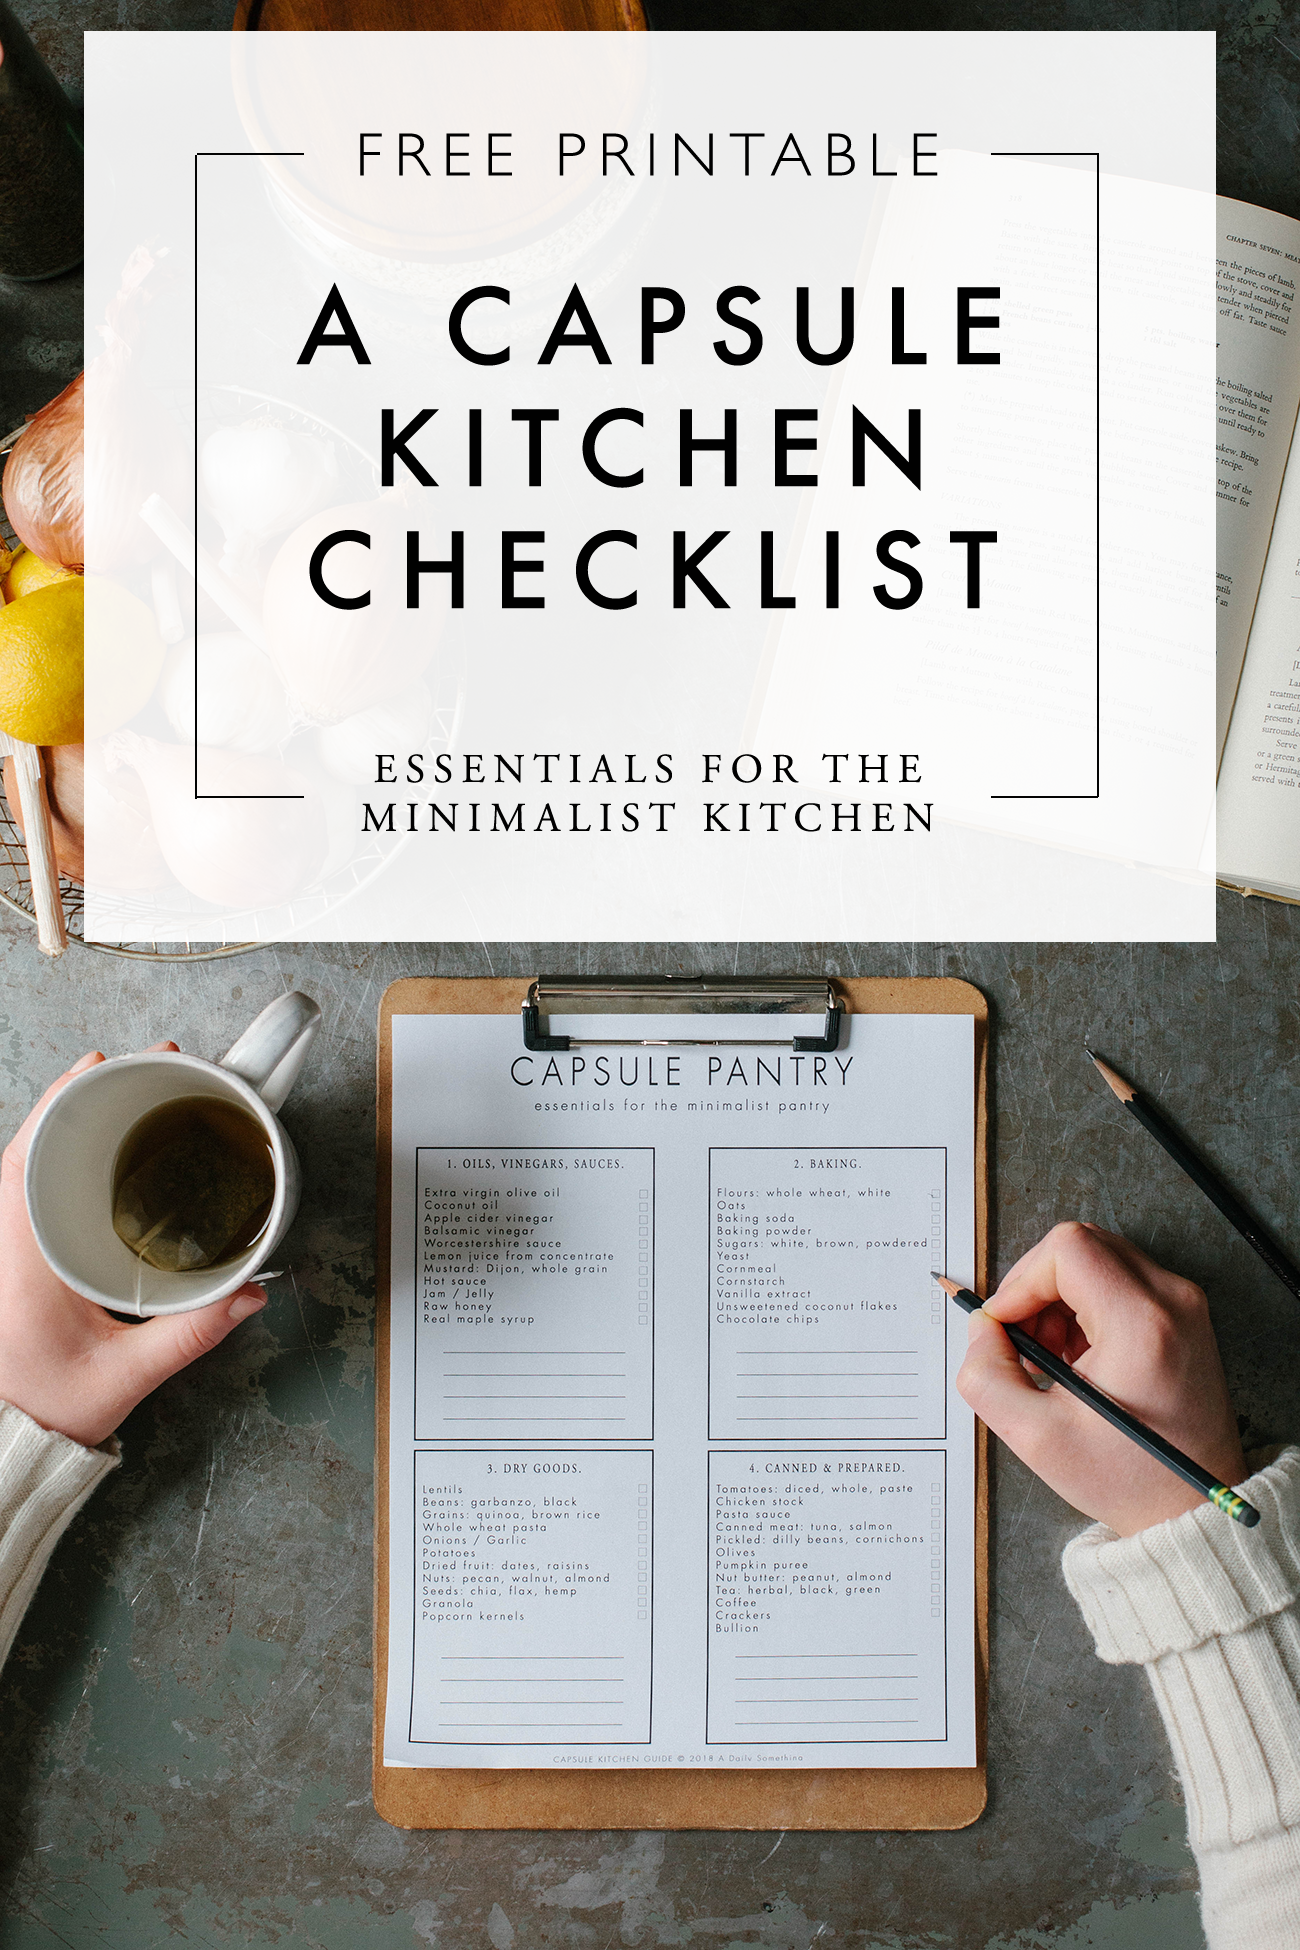 Minimalist Kitchen Essentials List - Get Green Be Well